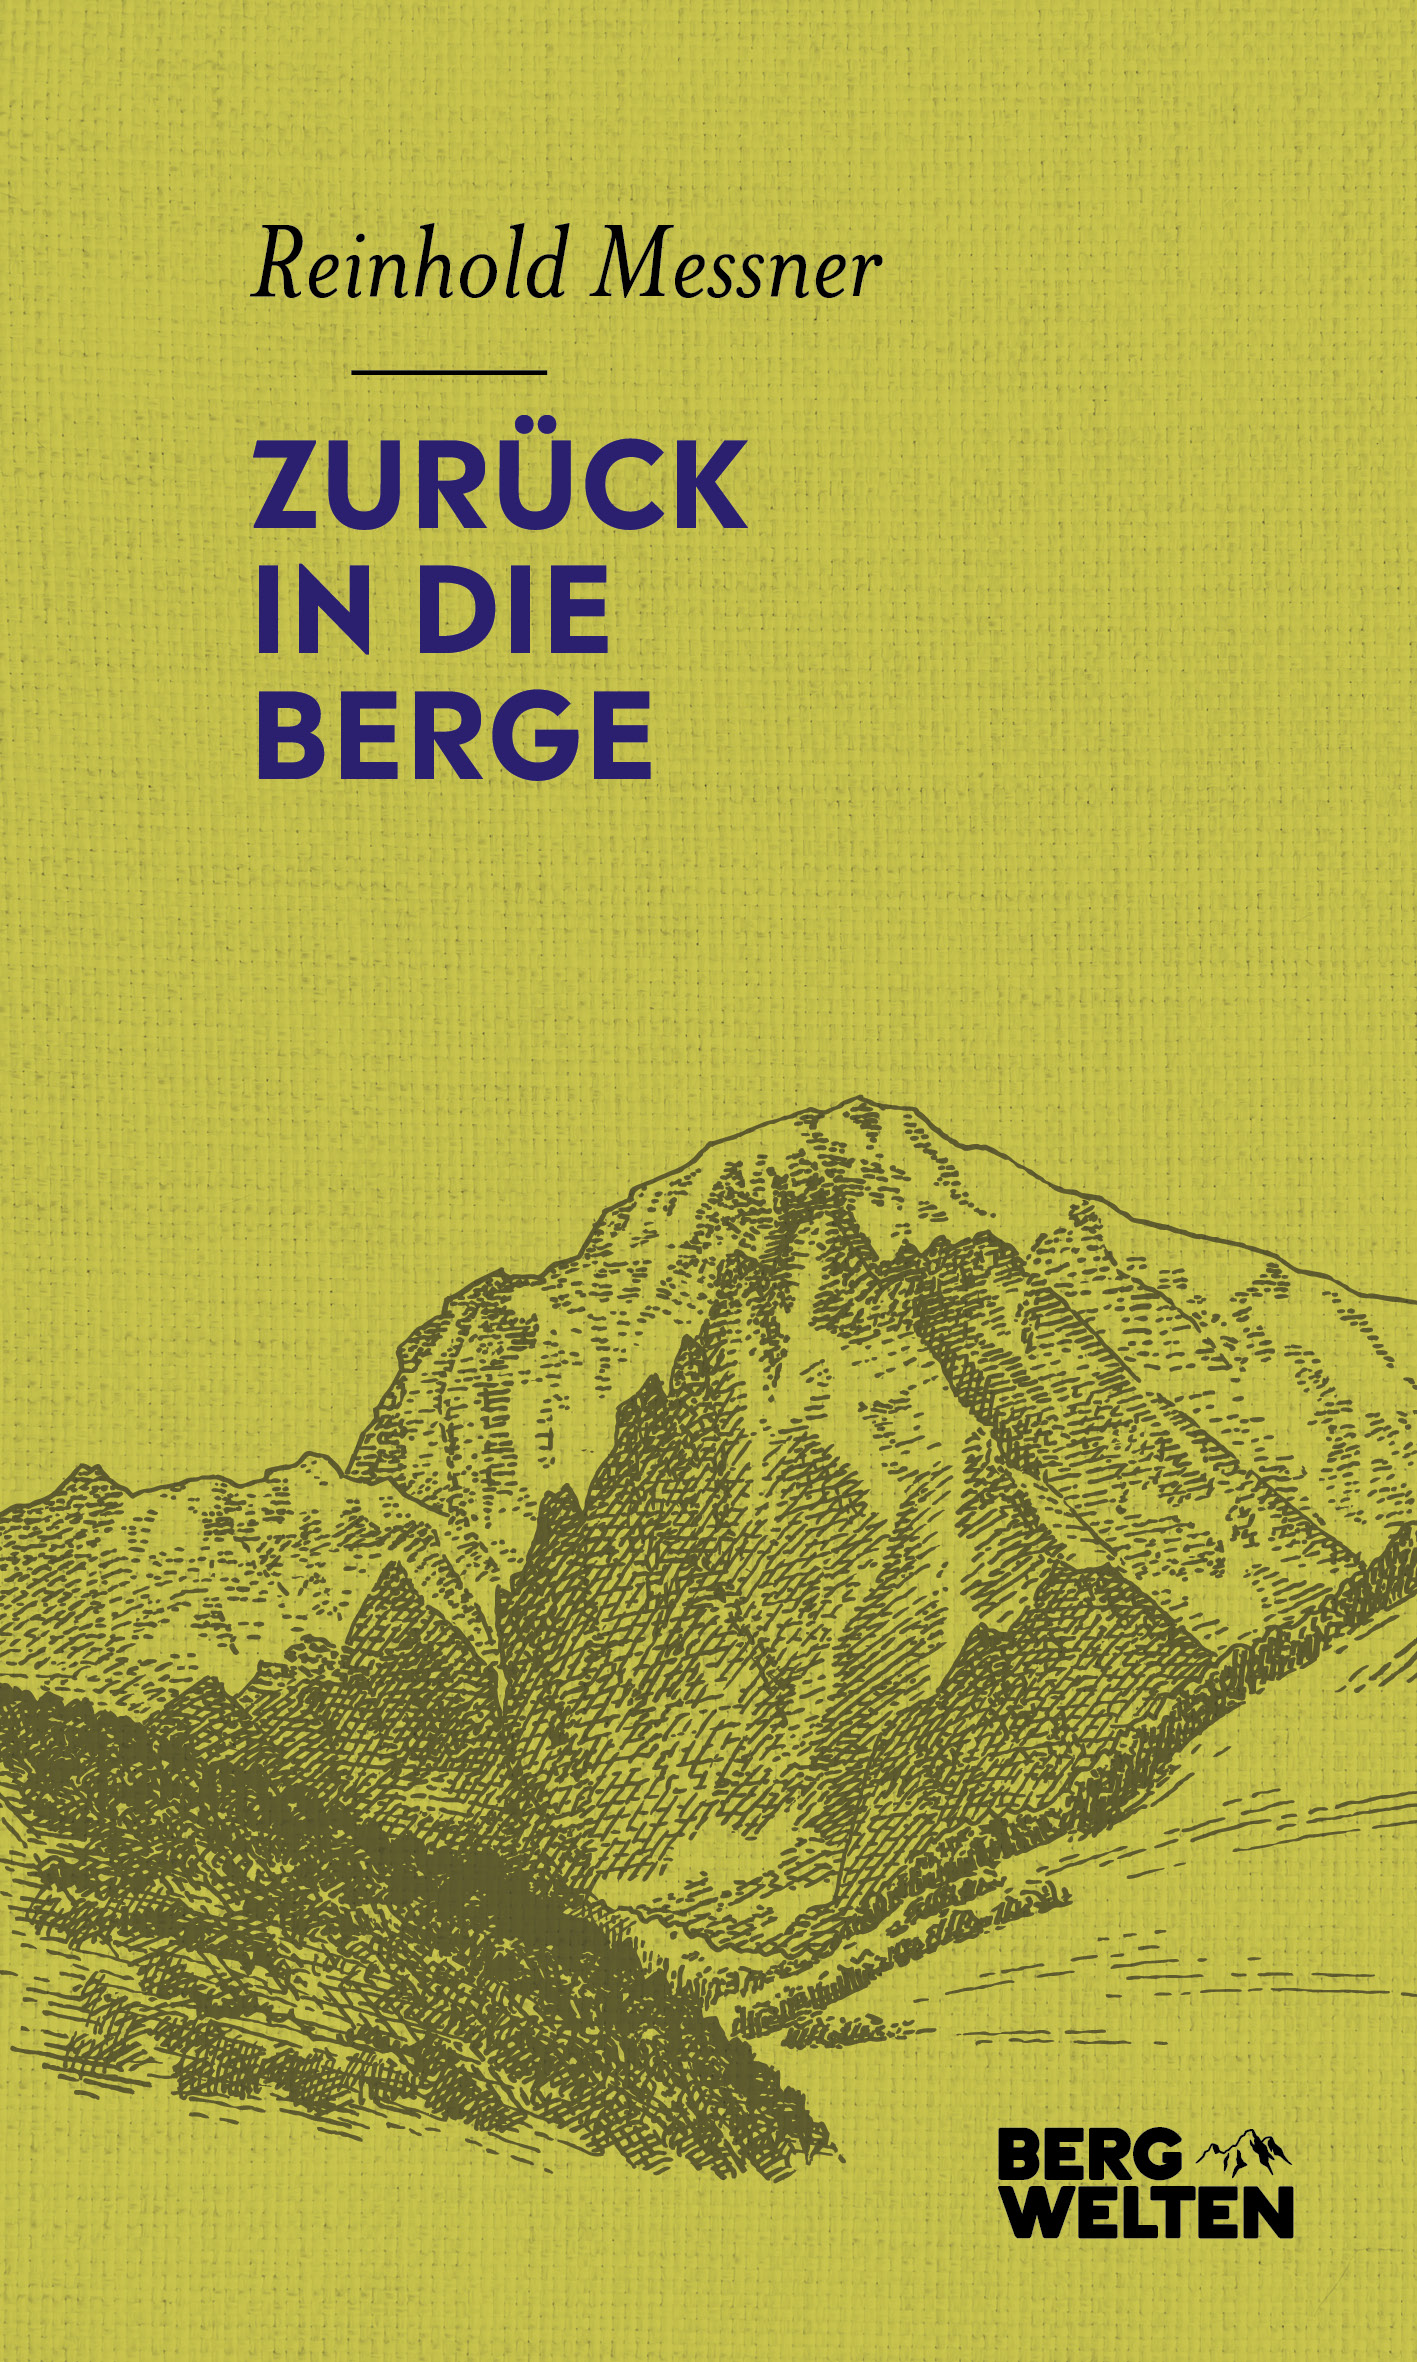 Buchcover: Reinhold Messner: Zurück in die Berge